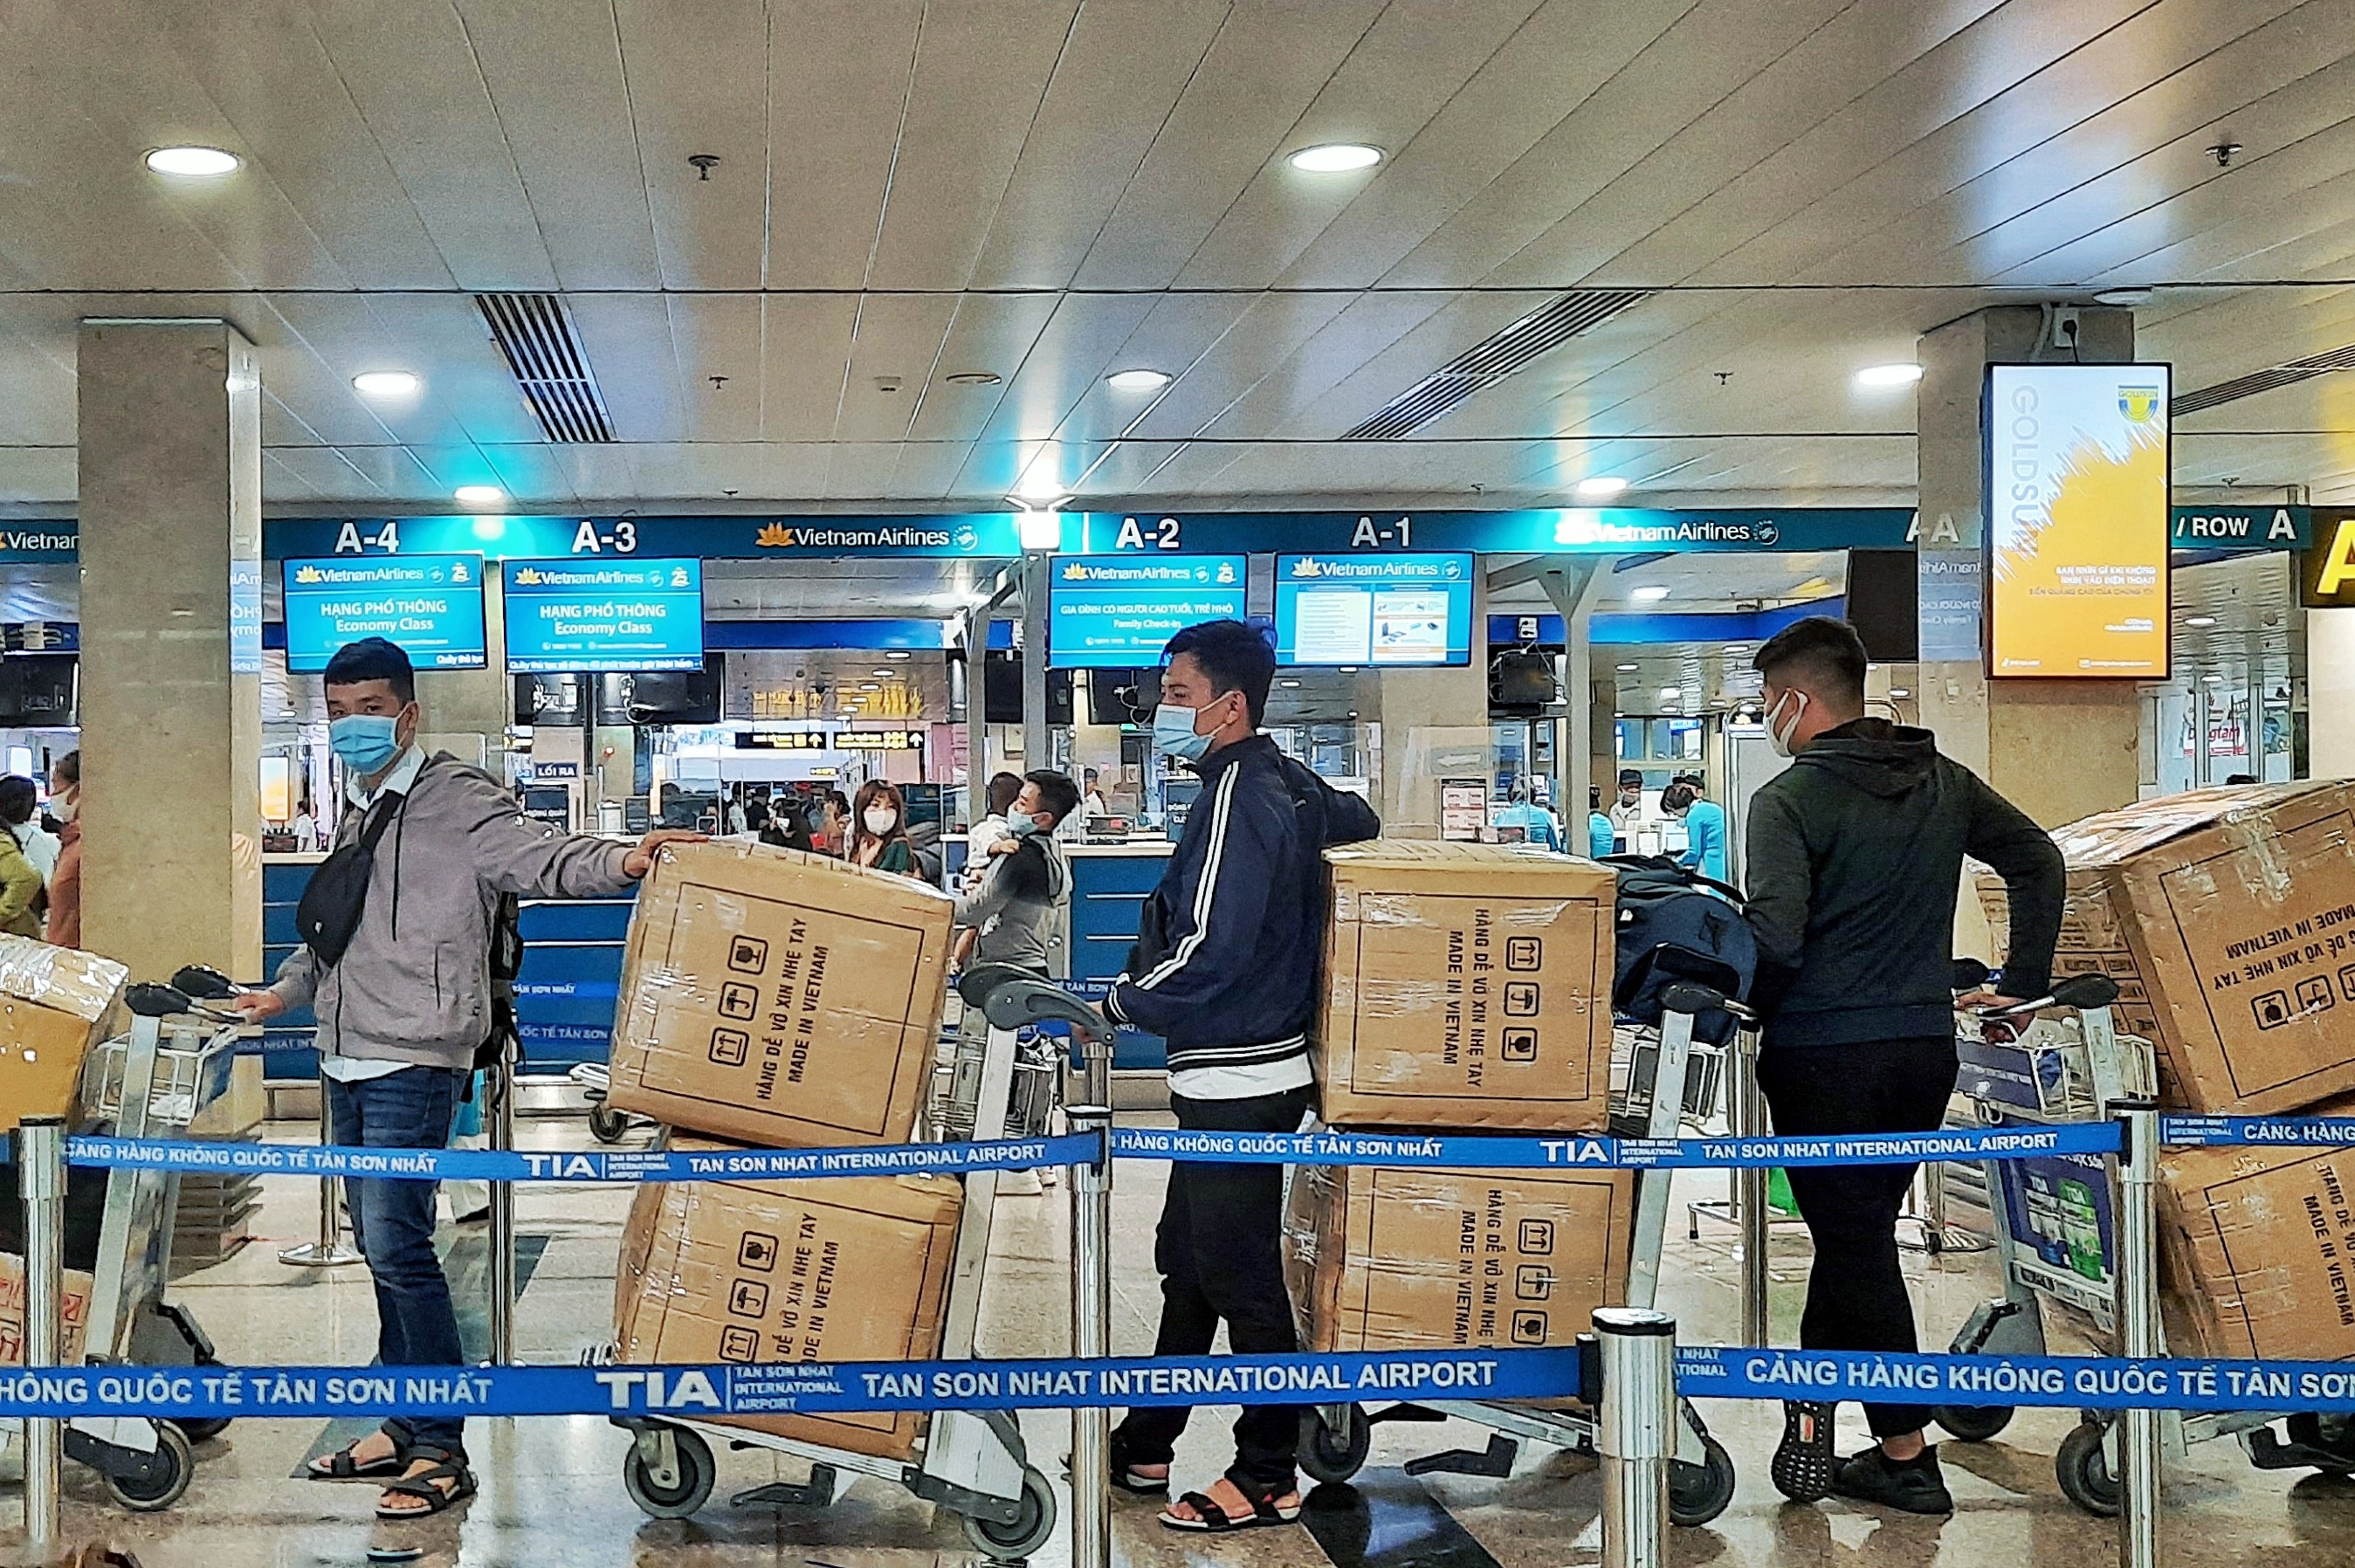 Ấm lòng những chuyến hàng hóa cứu trợ đồng bào miền Trung giữa sân bay Tân Sơn Nhất